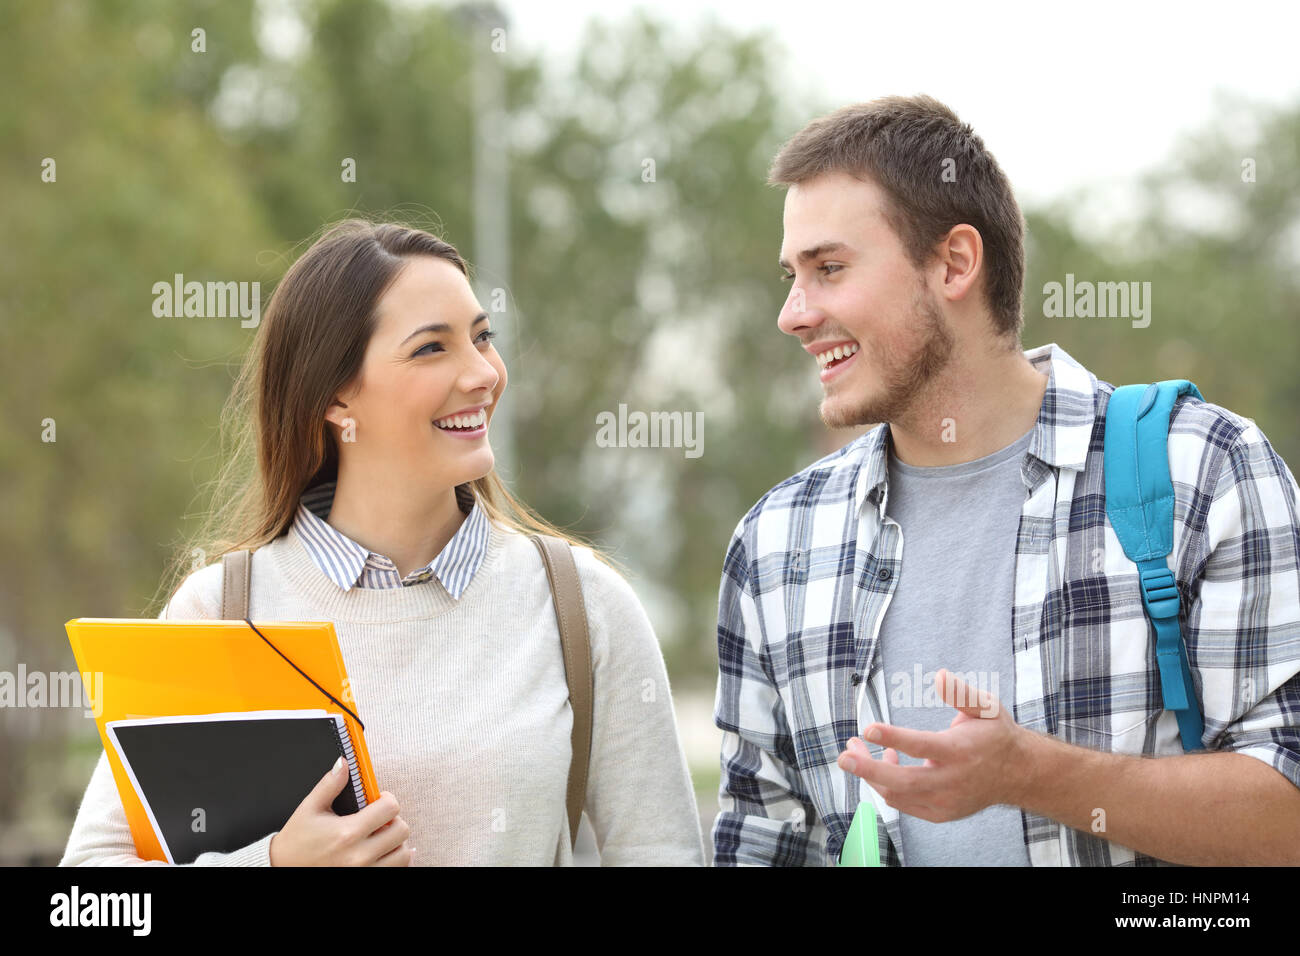 Deux étudiants heureux à marcher en direction de la caméra et de parler dans un parc ou d'un campus universitaire Banque D'Images